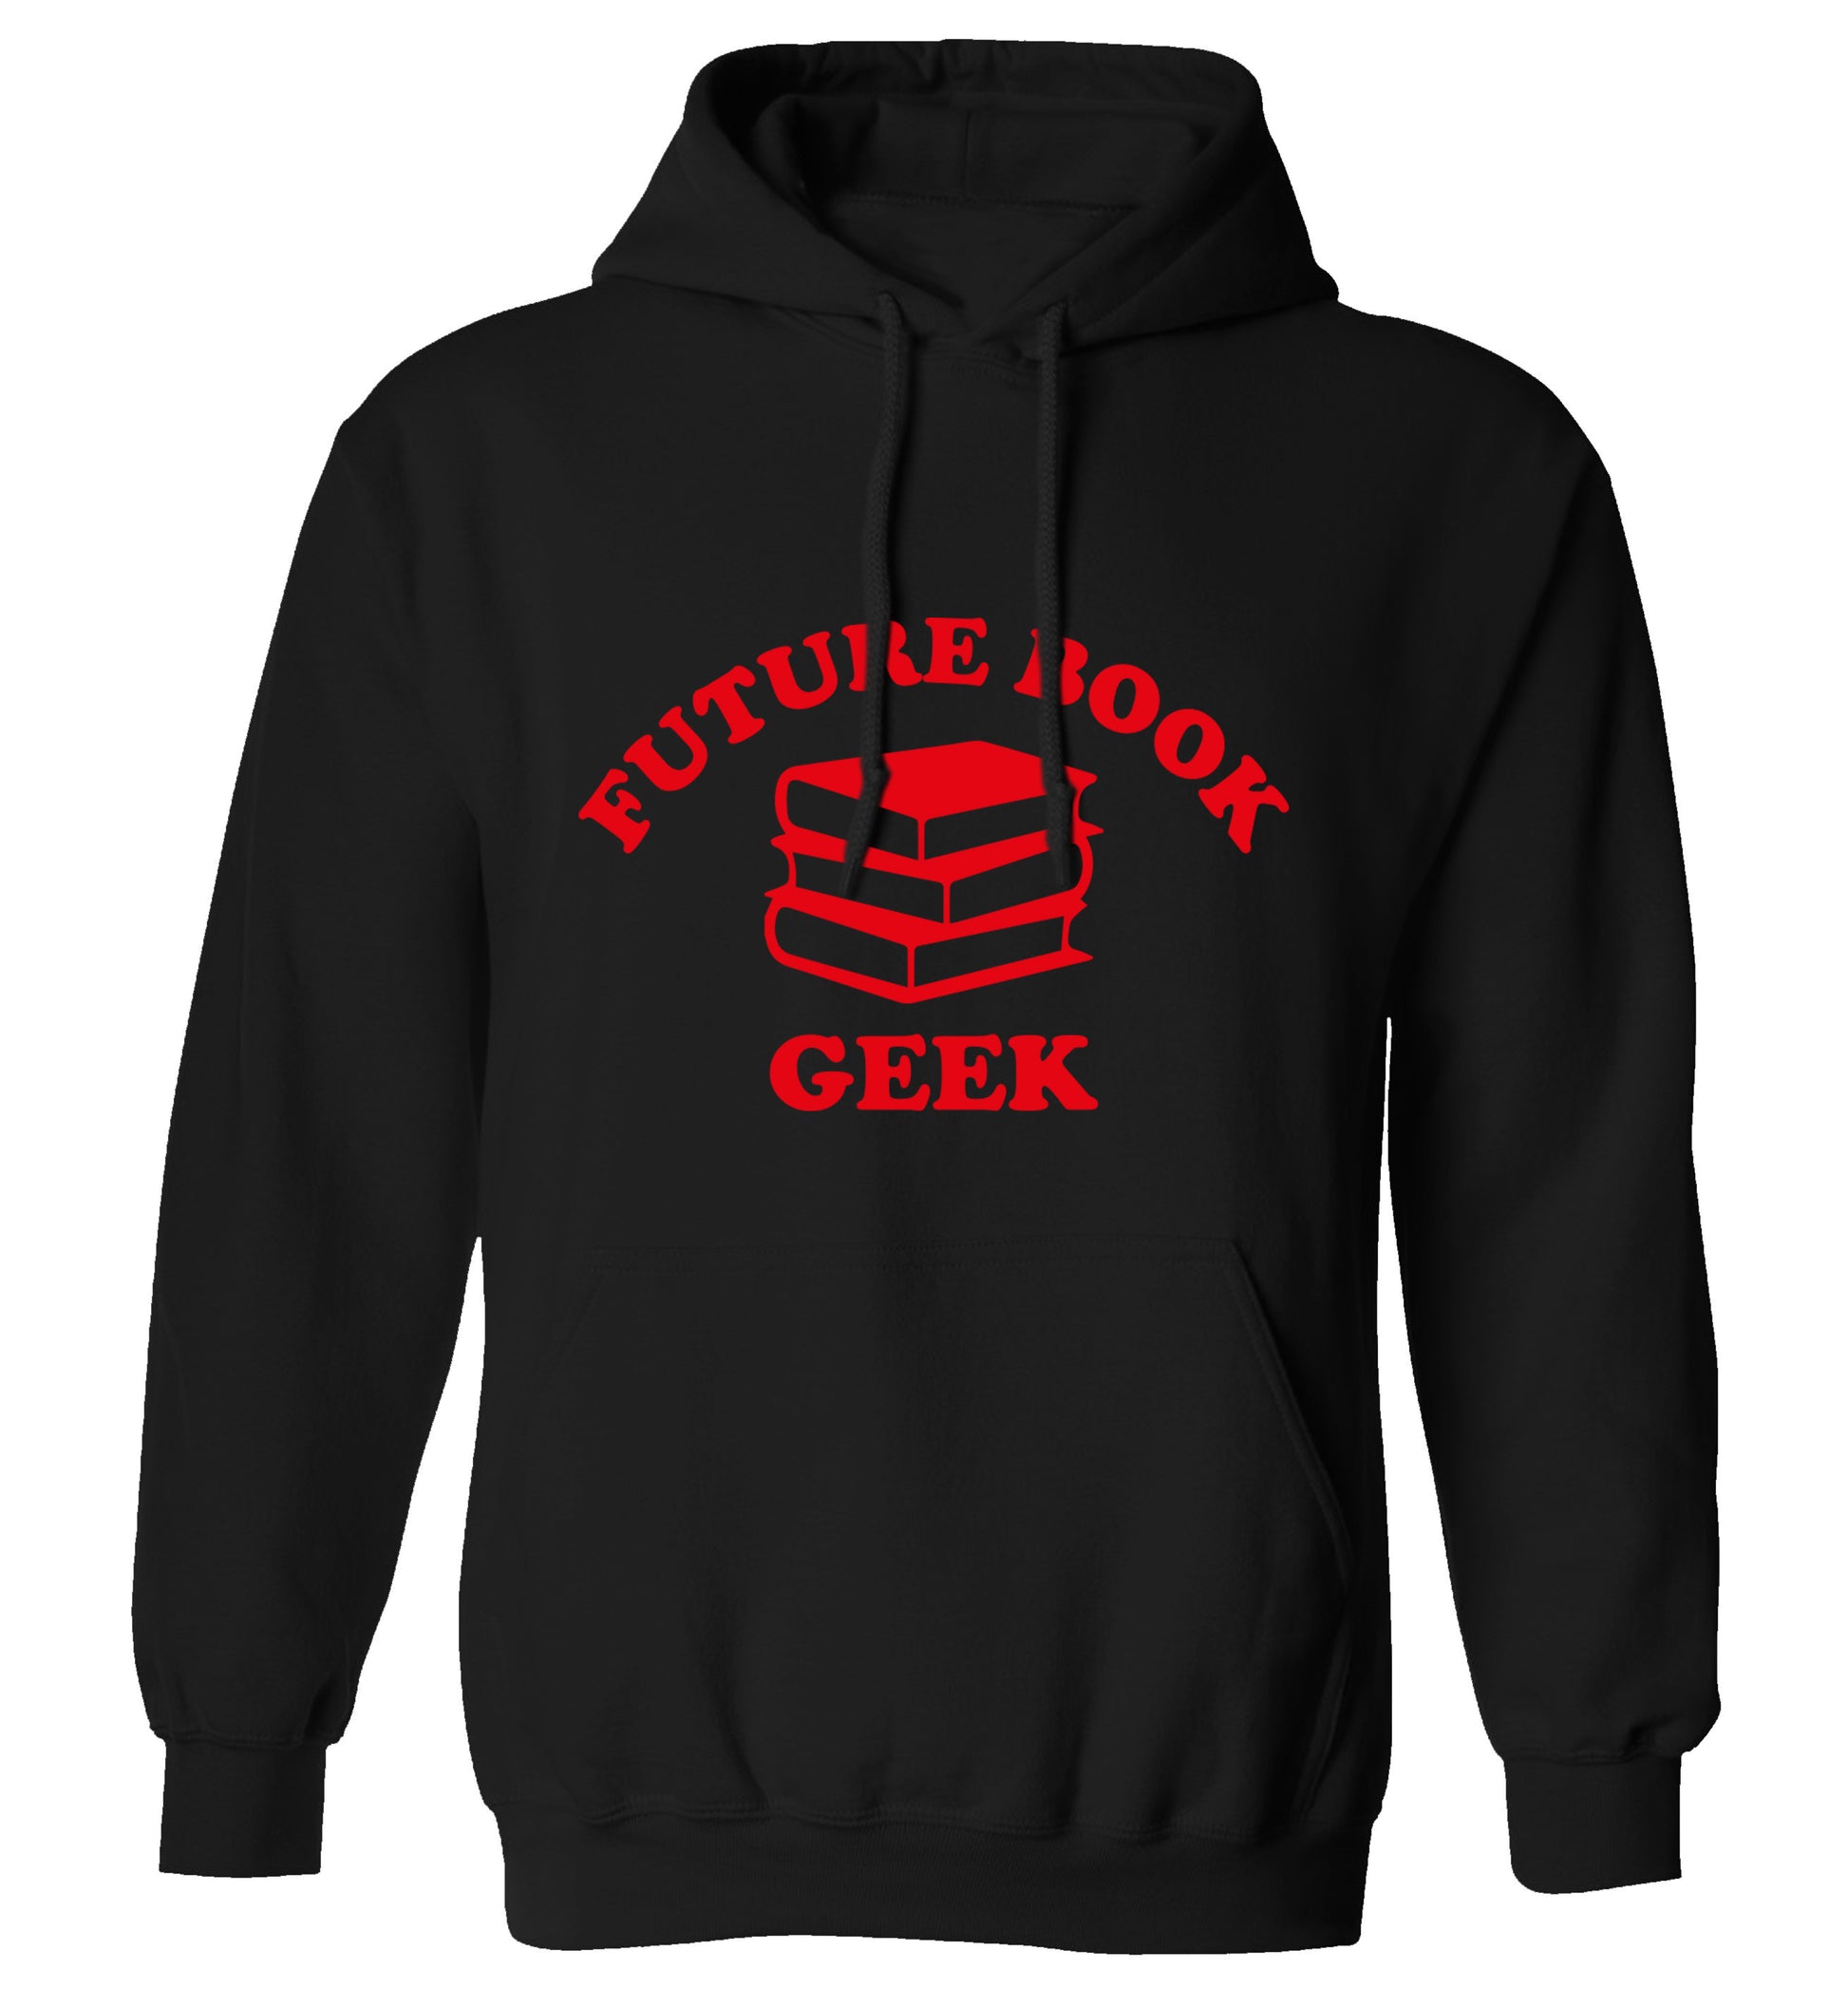 Future book geek adults unisex black hoodie 2XL